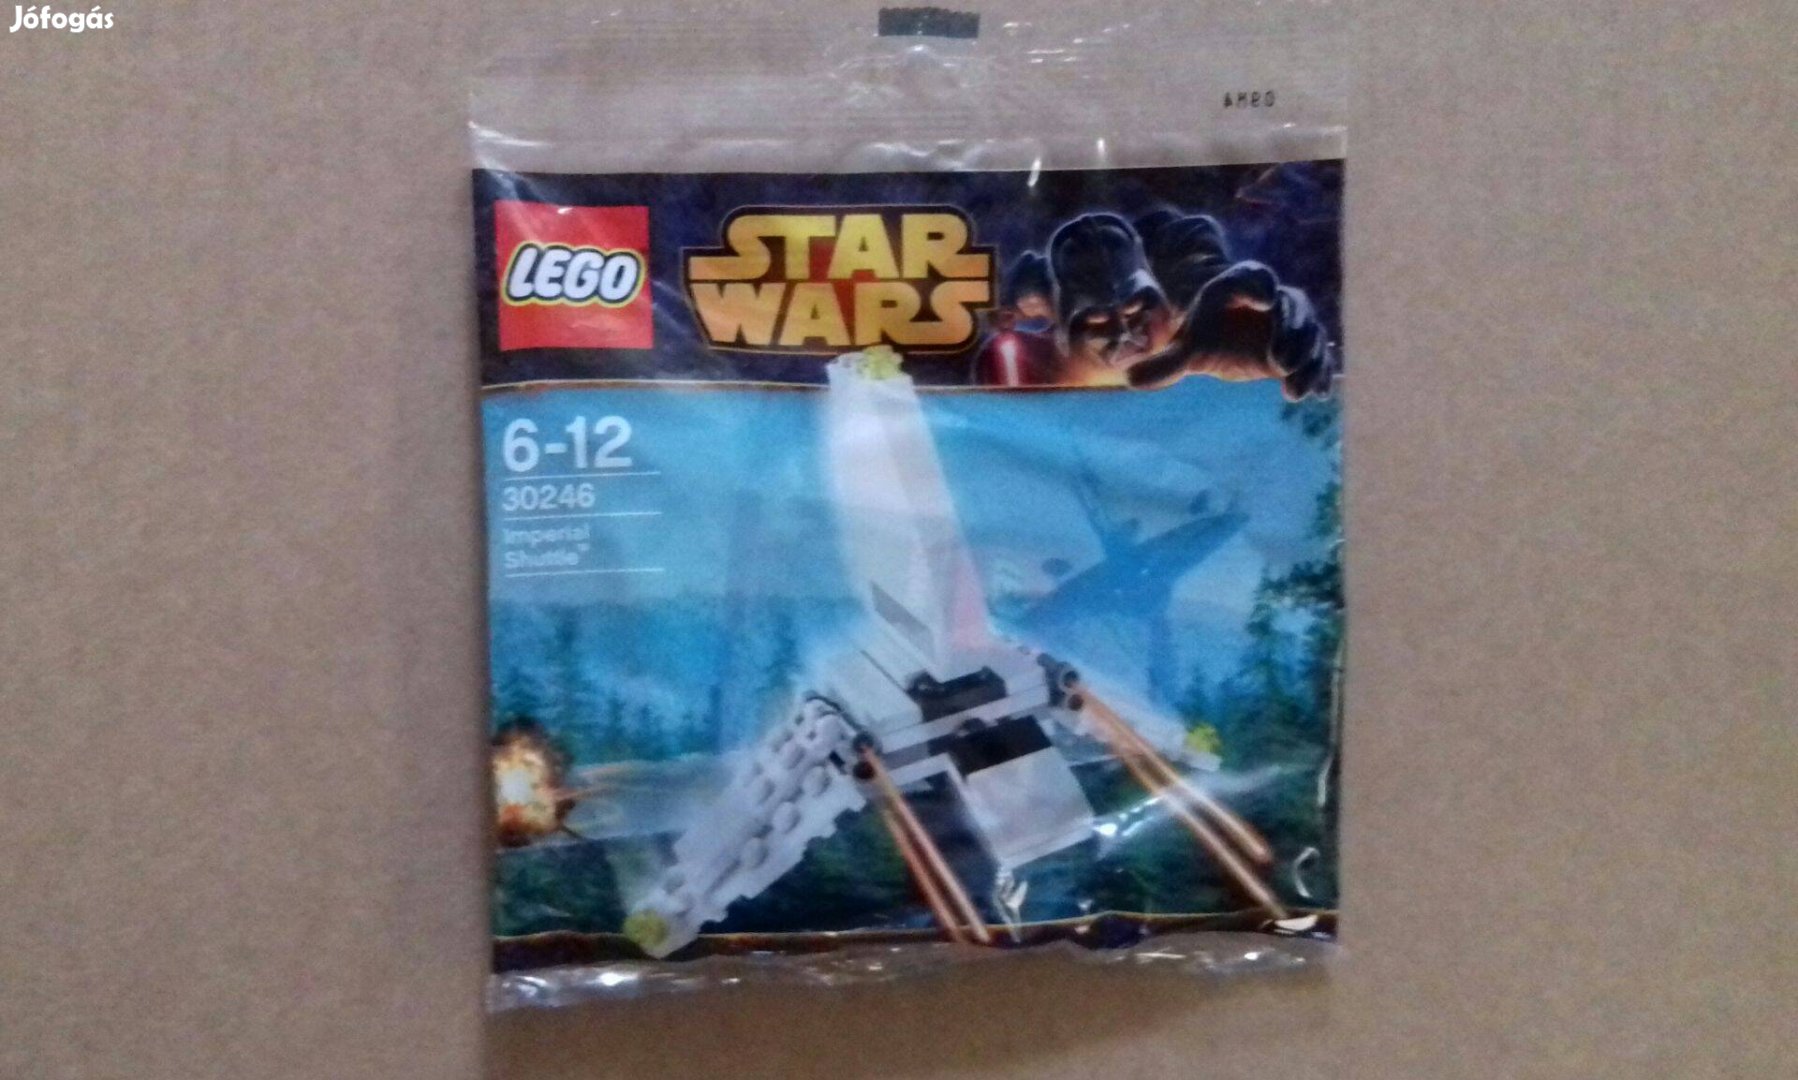 2014-es bontatlan Star Wars LEGO 30246 Imperial Shuttle a 75302 kicsib